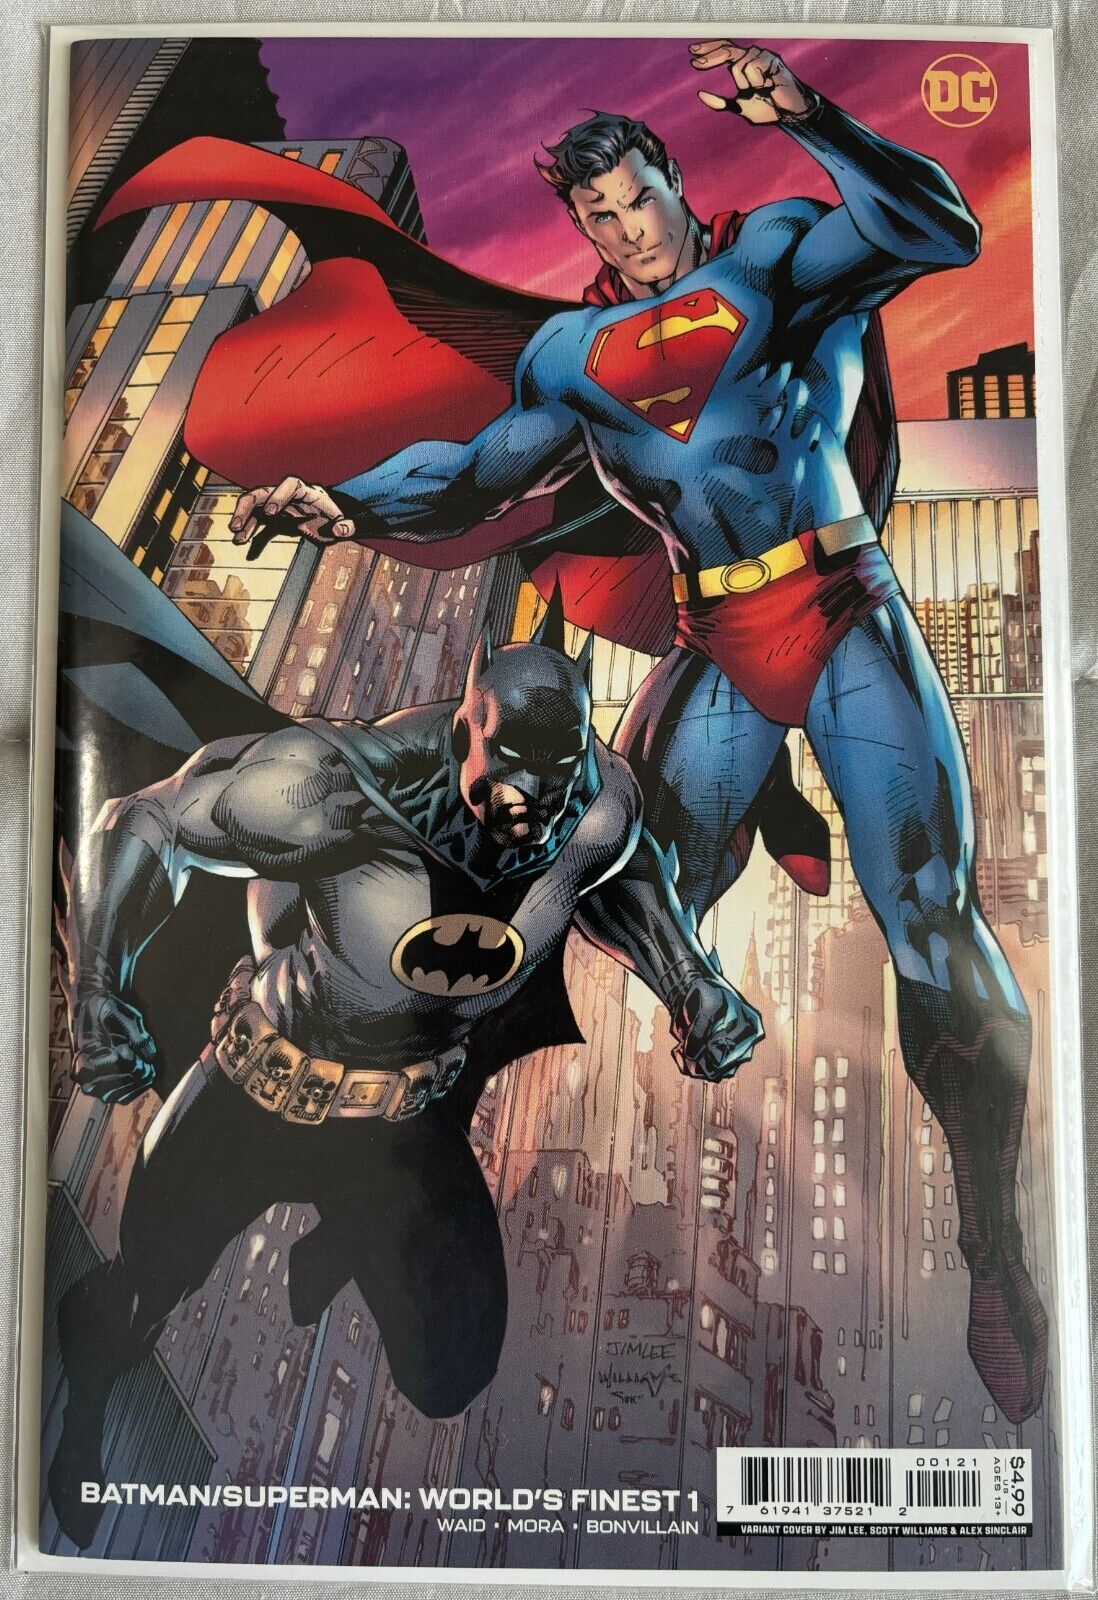 DC BATMAN SUPERMAN WORLD'S FINEST #1 / JIM LEE Variant Comics / NM Condition